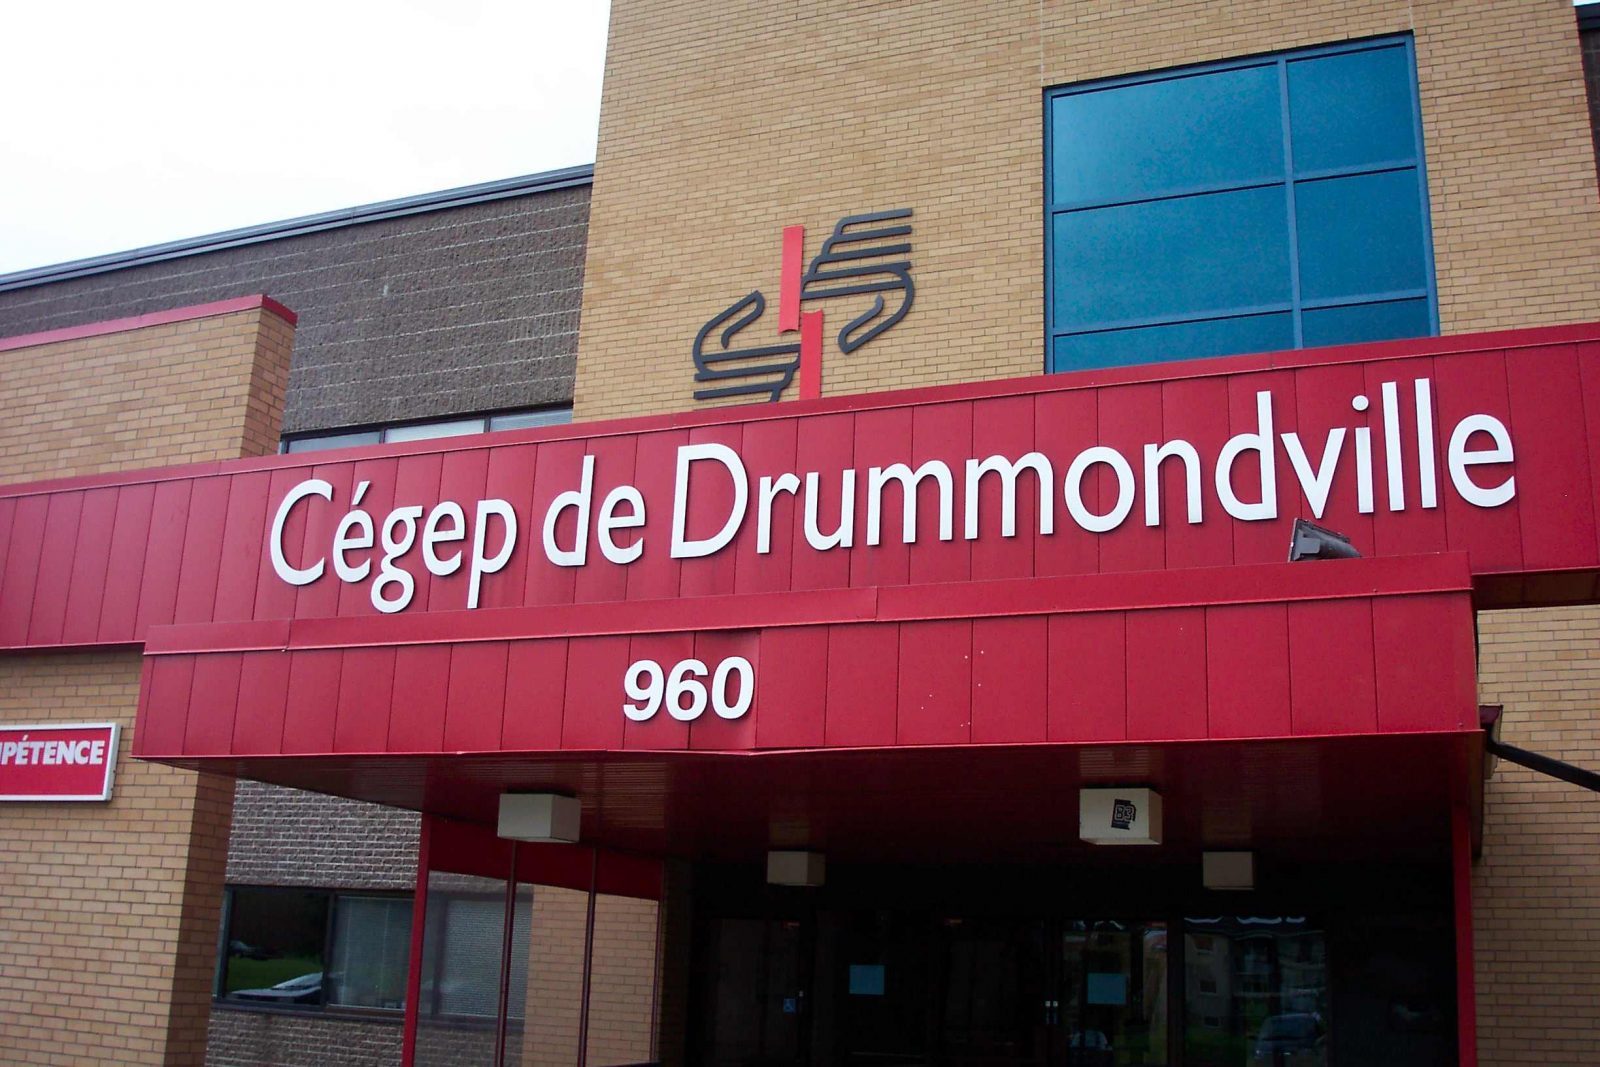 Les cours reprendront le 6 avril au Cégep de Drummondville